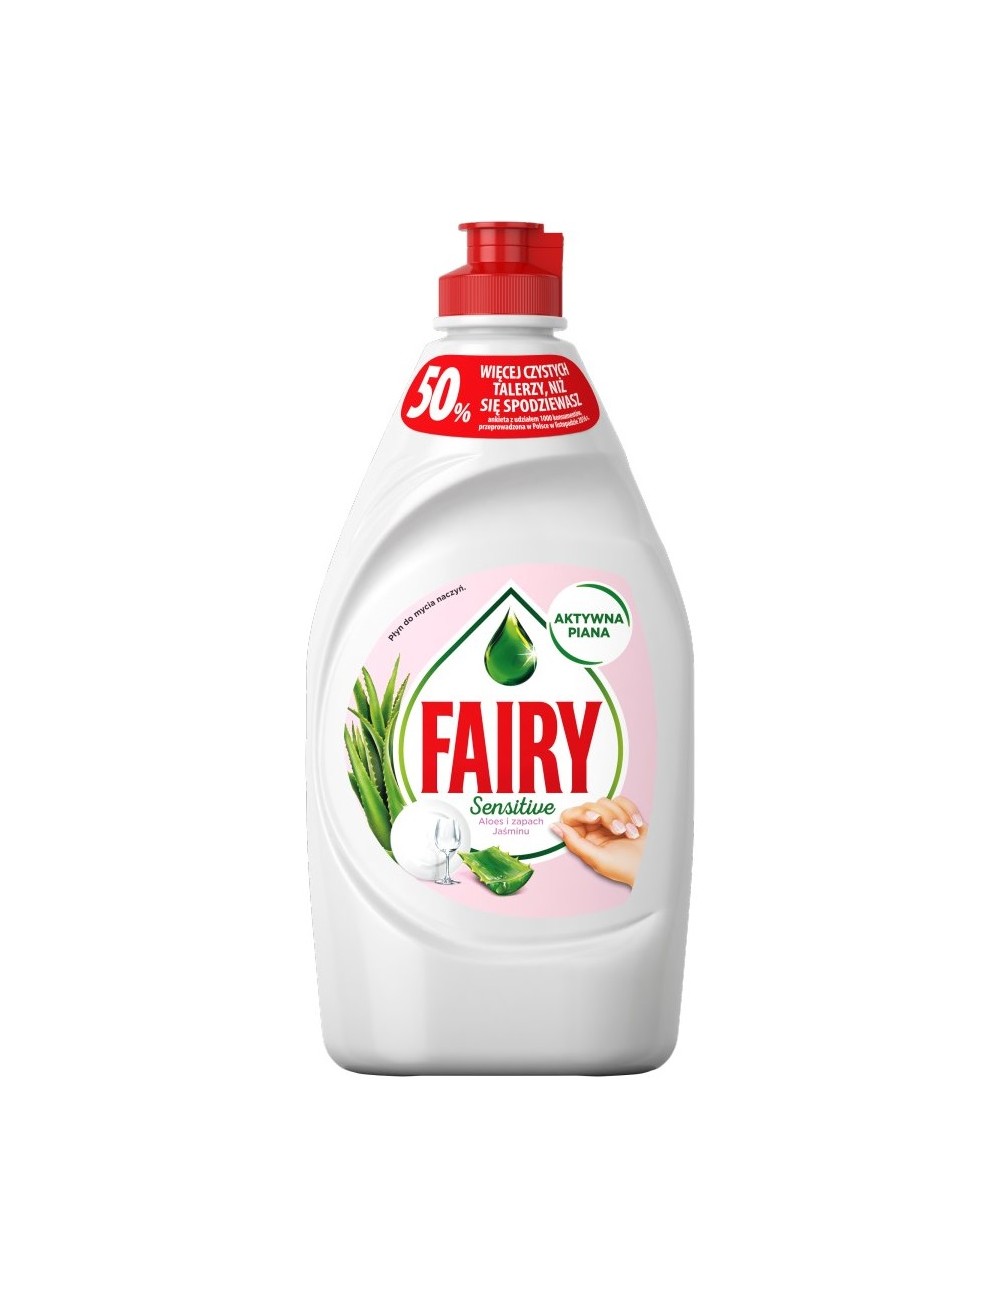 Fairy Sensitive Aloes i Zapach Jaśminu Płyn do Mycia Naczyń 450 ml